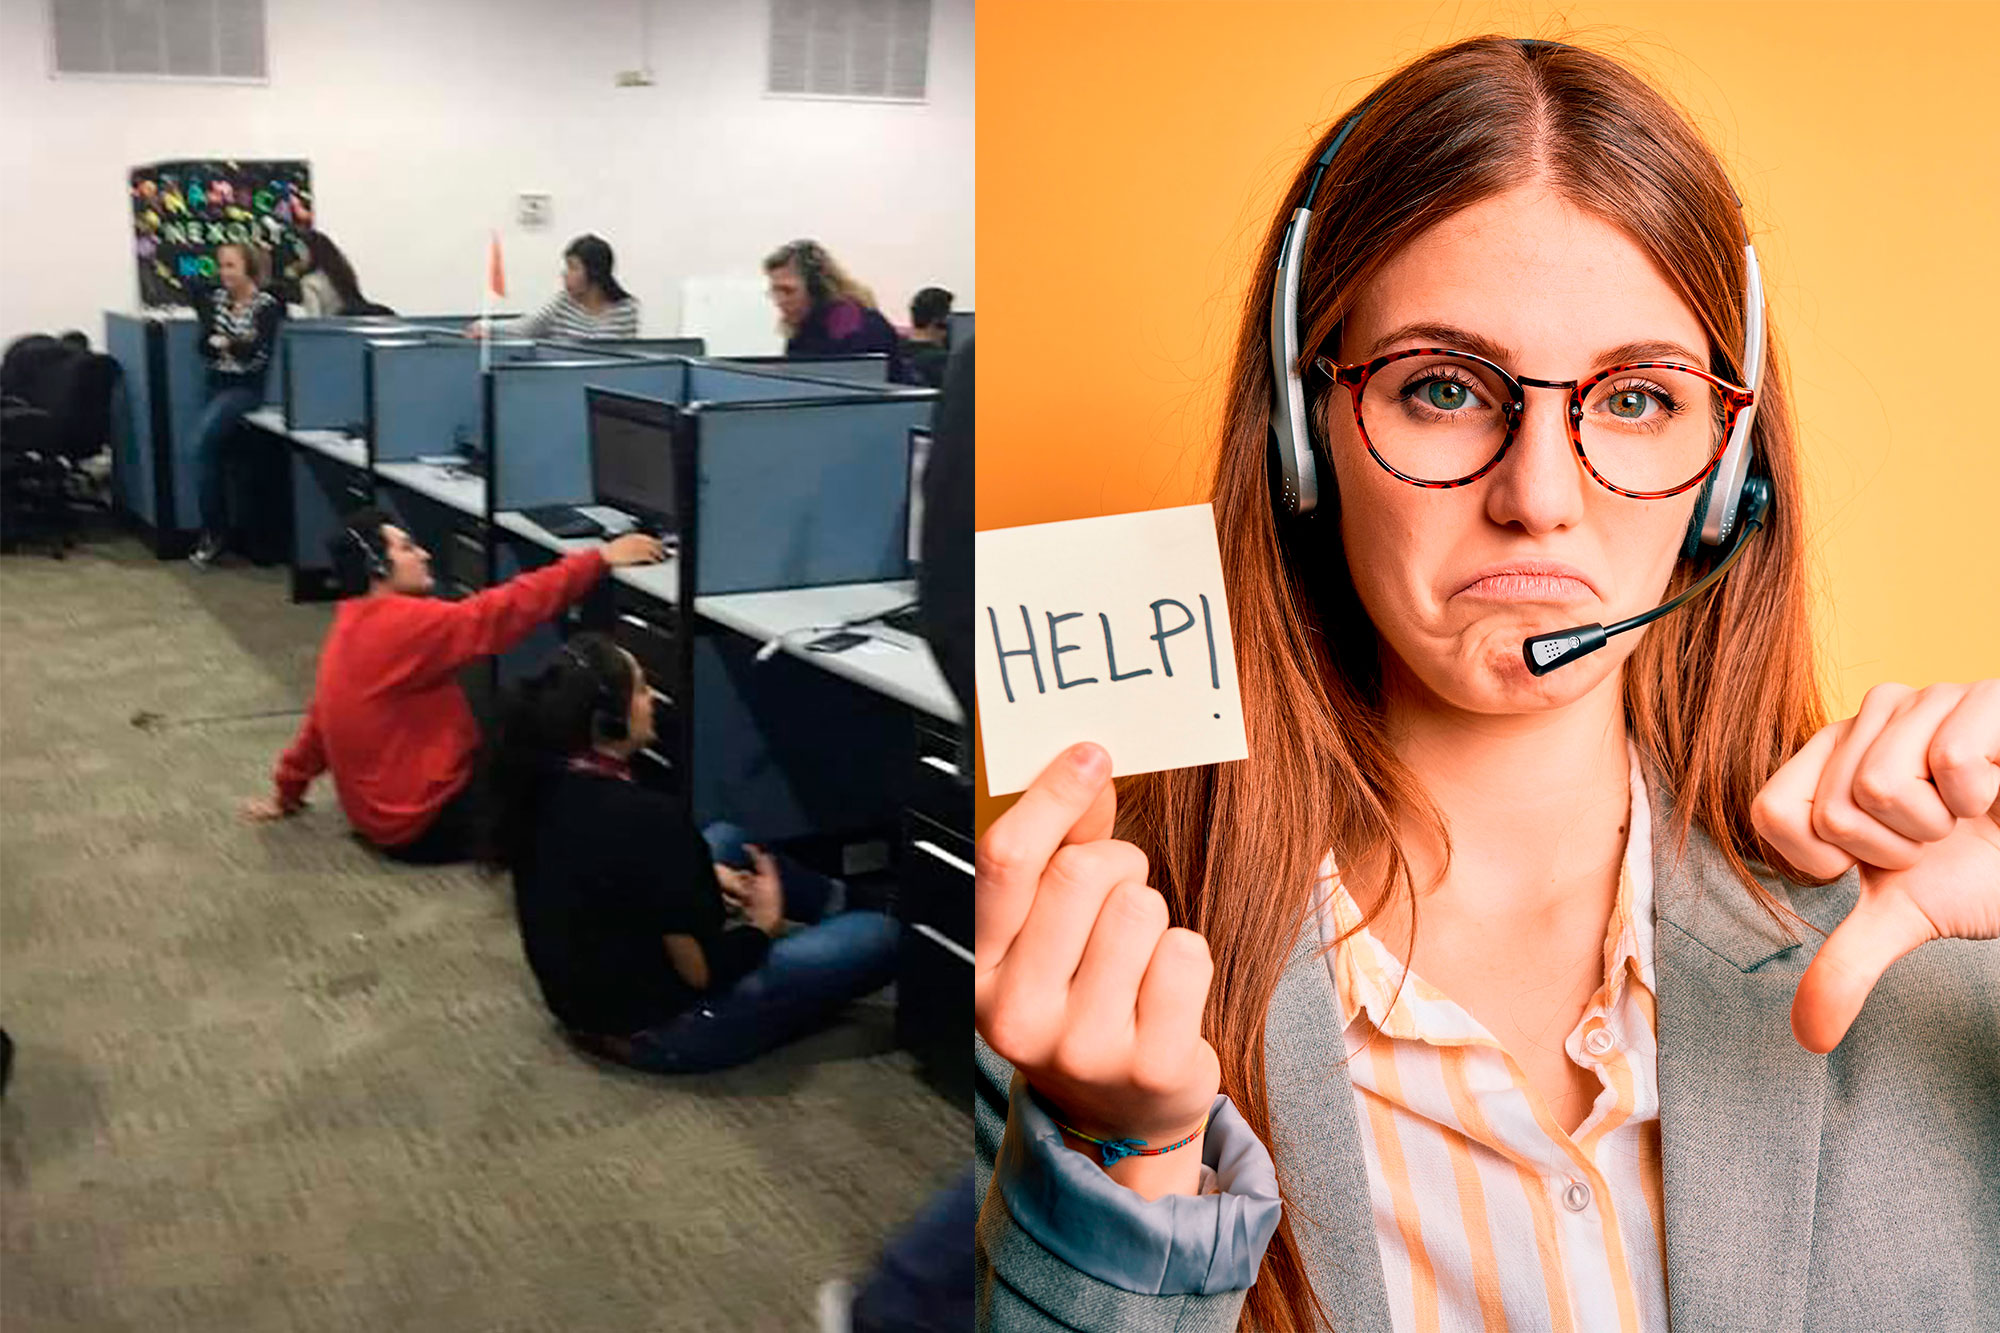 Una joven expone a call center por quitarles las sillas a los empleados como castigo y se hace viral